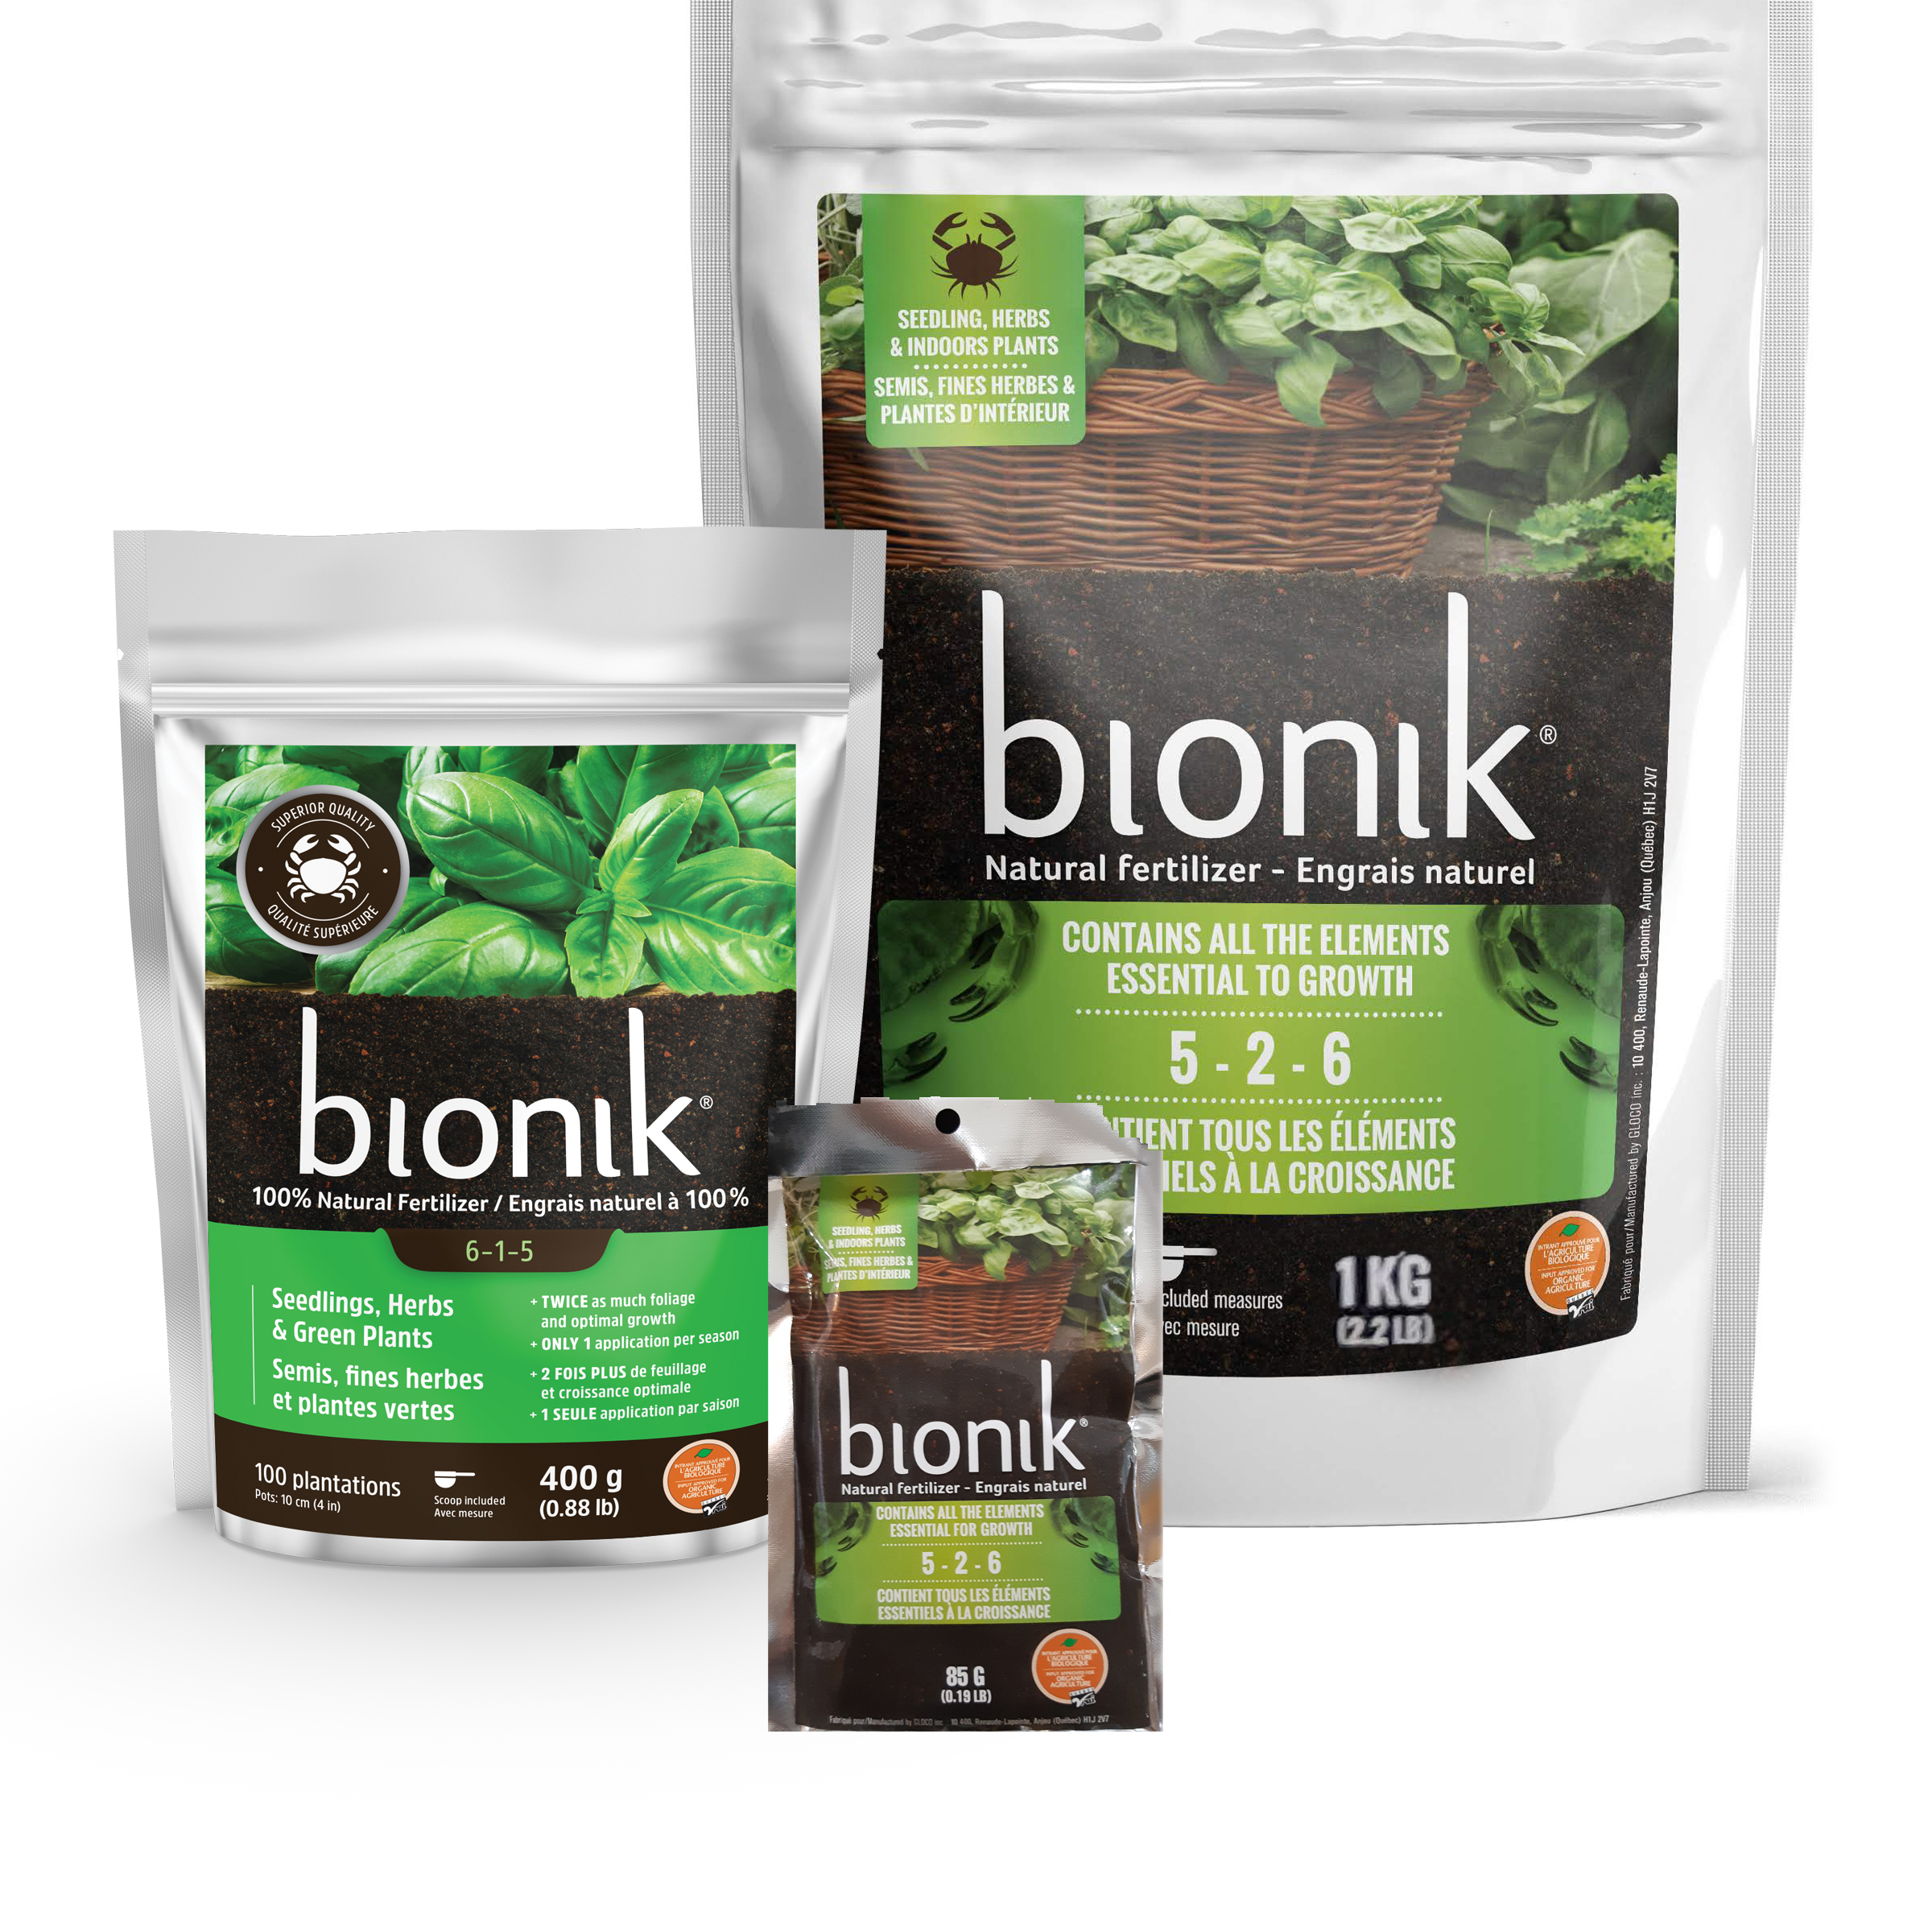 Engrais Bionik pour semis, fines herbes et plantes vertes